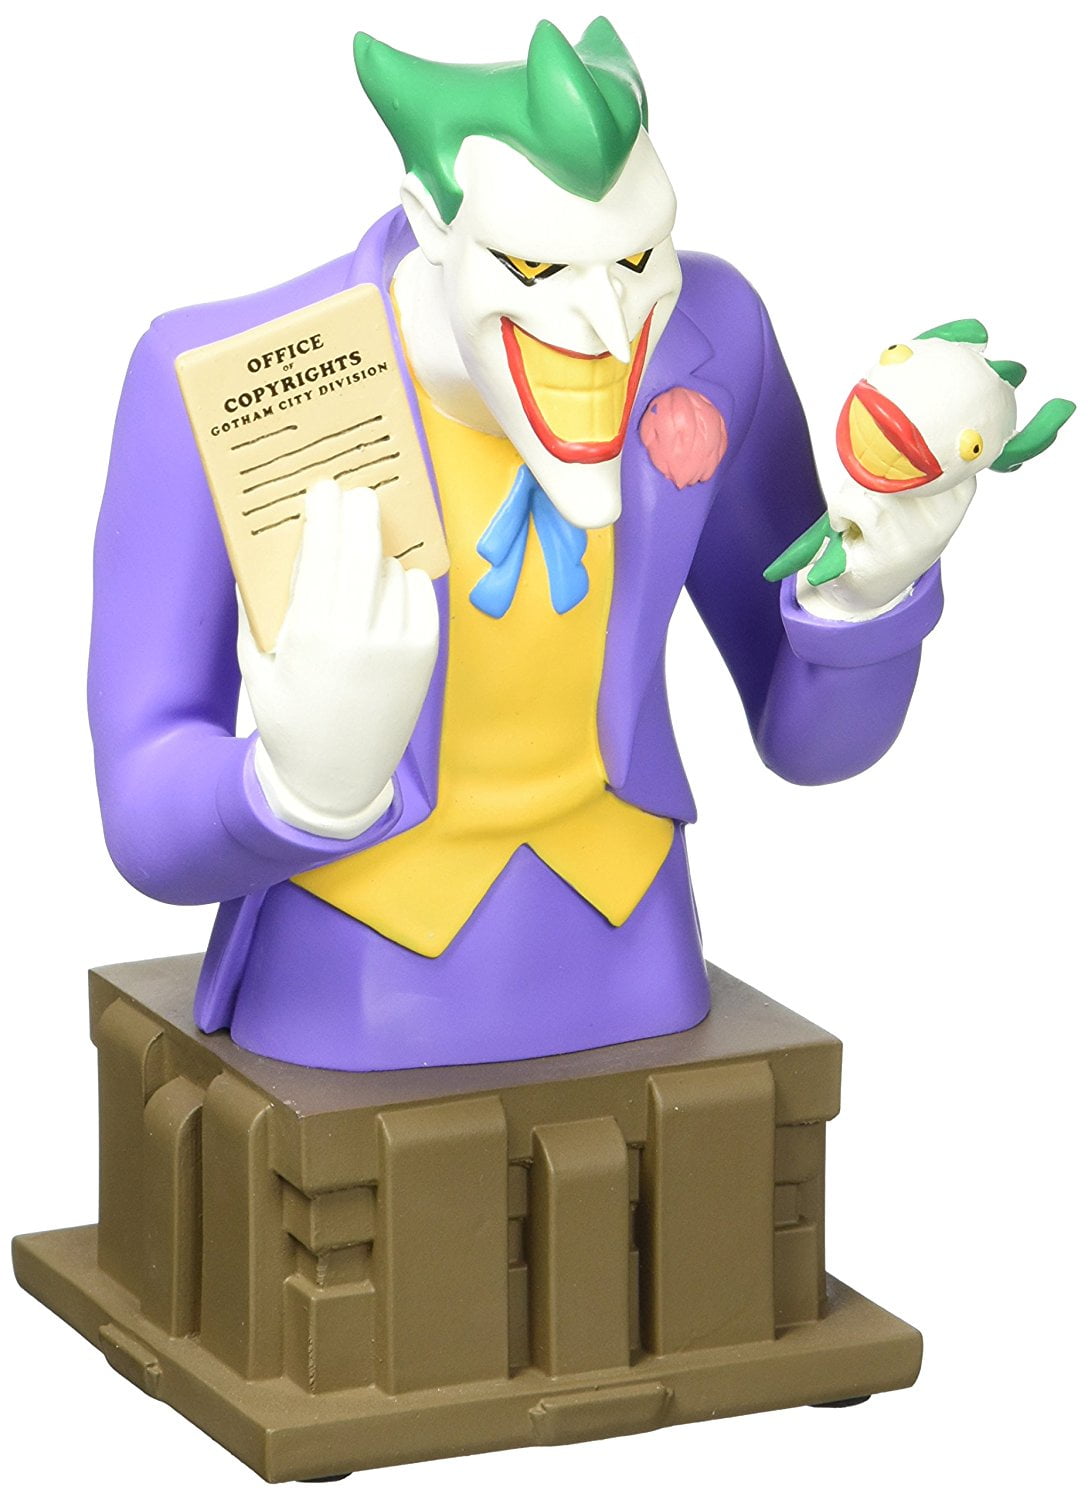 Batman Joker Bust Figure Vinyl Model Kit 13 Inches 